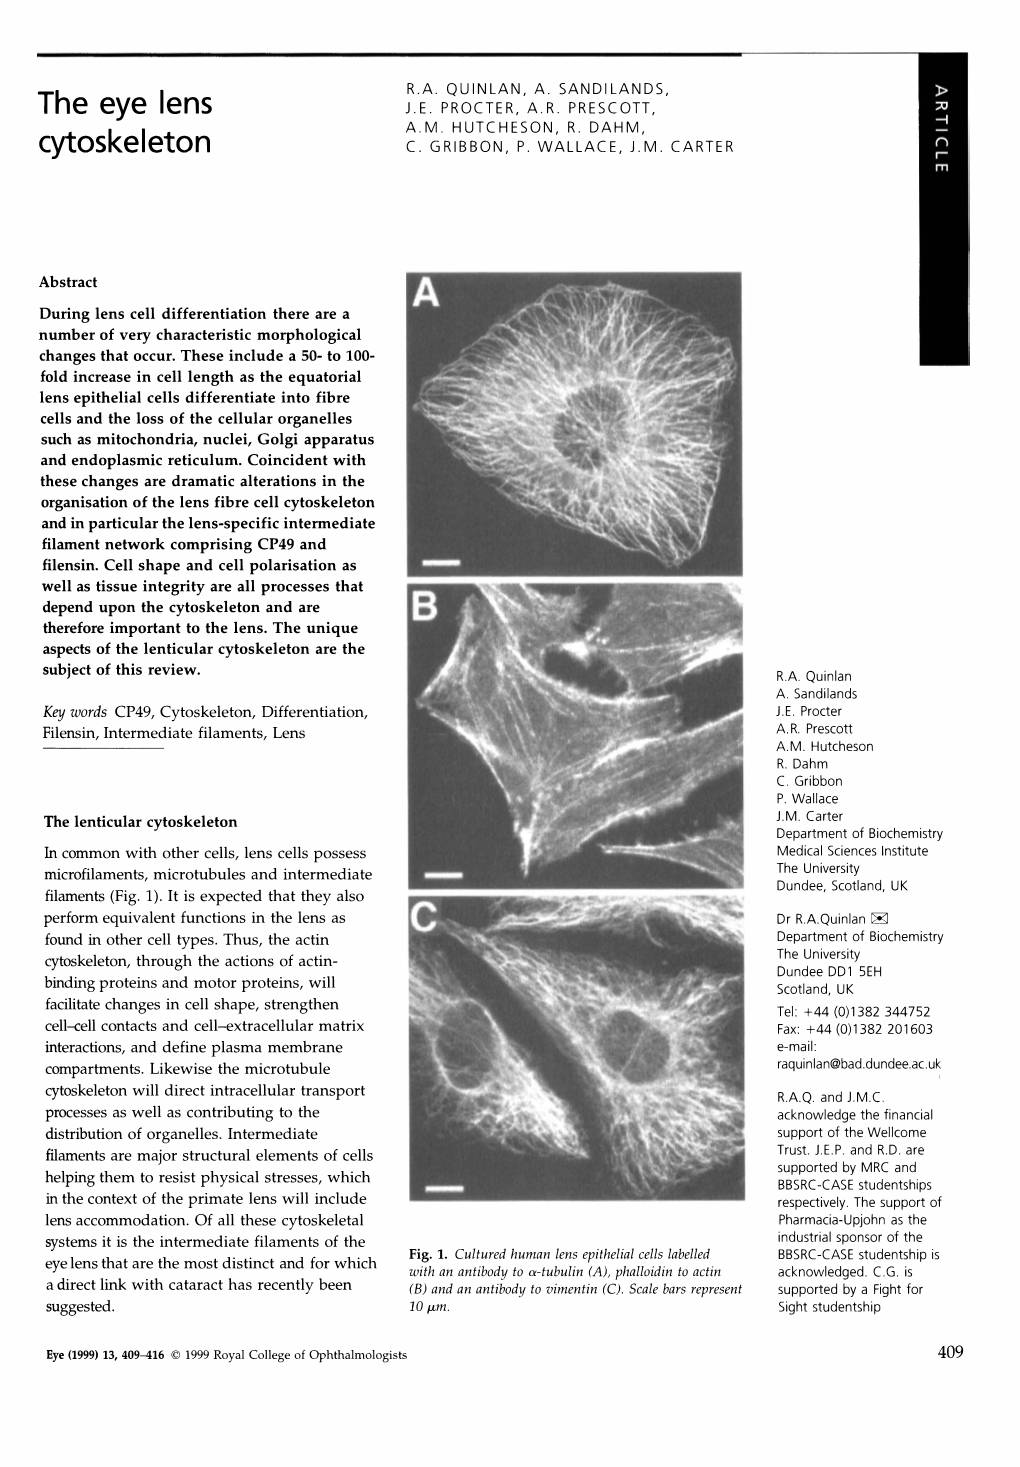 The Eye Lens Cytoskeleton